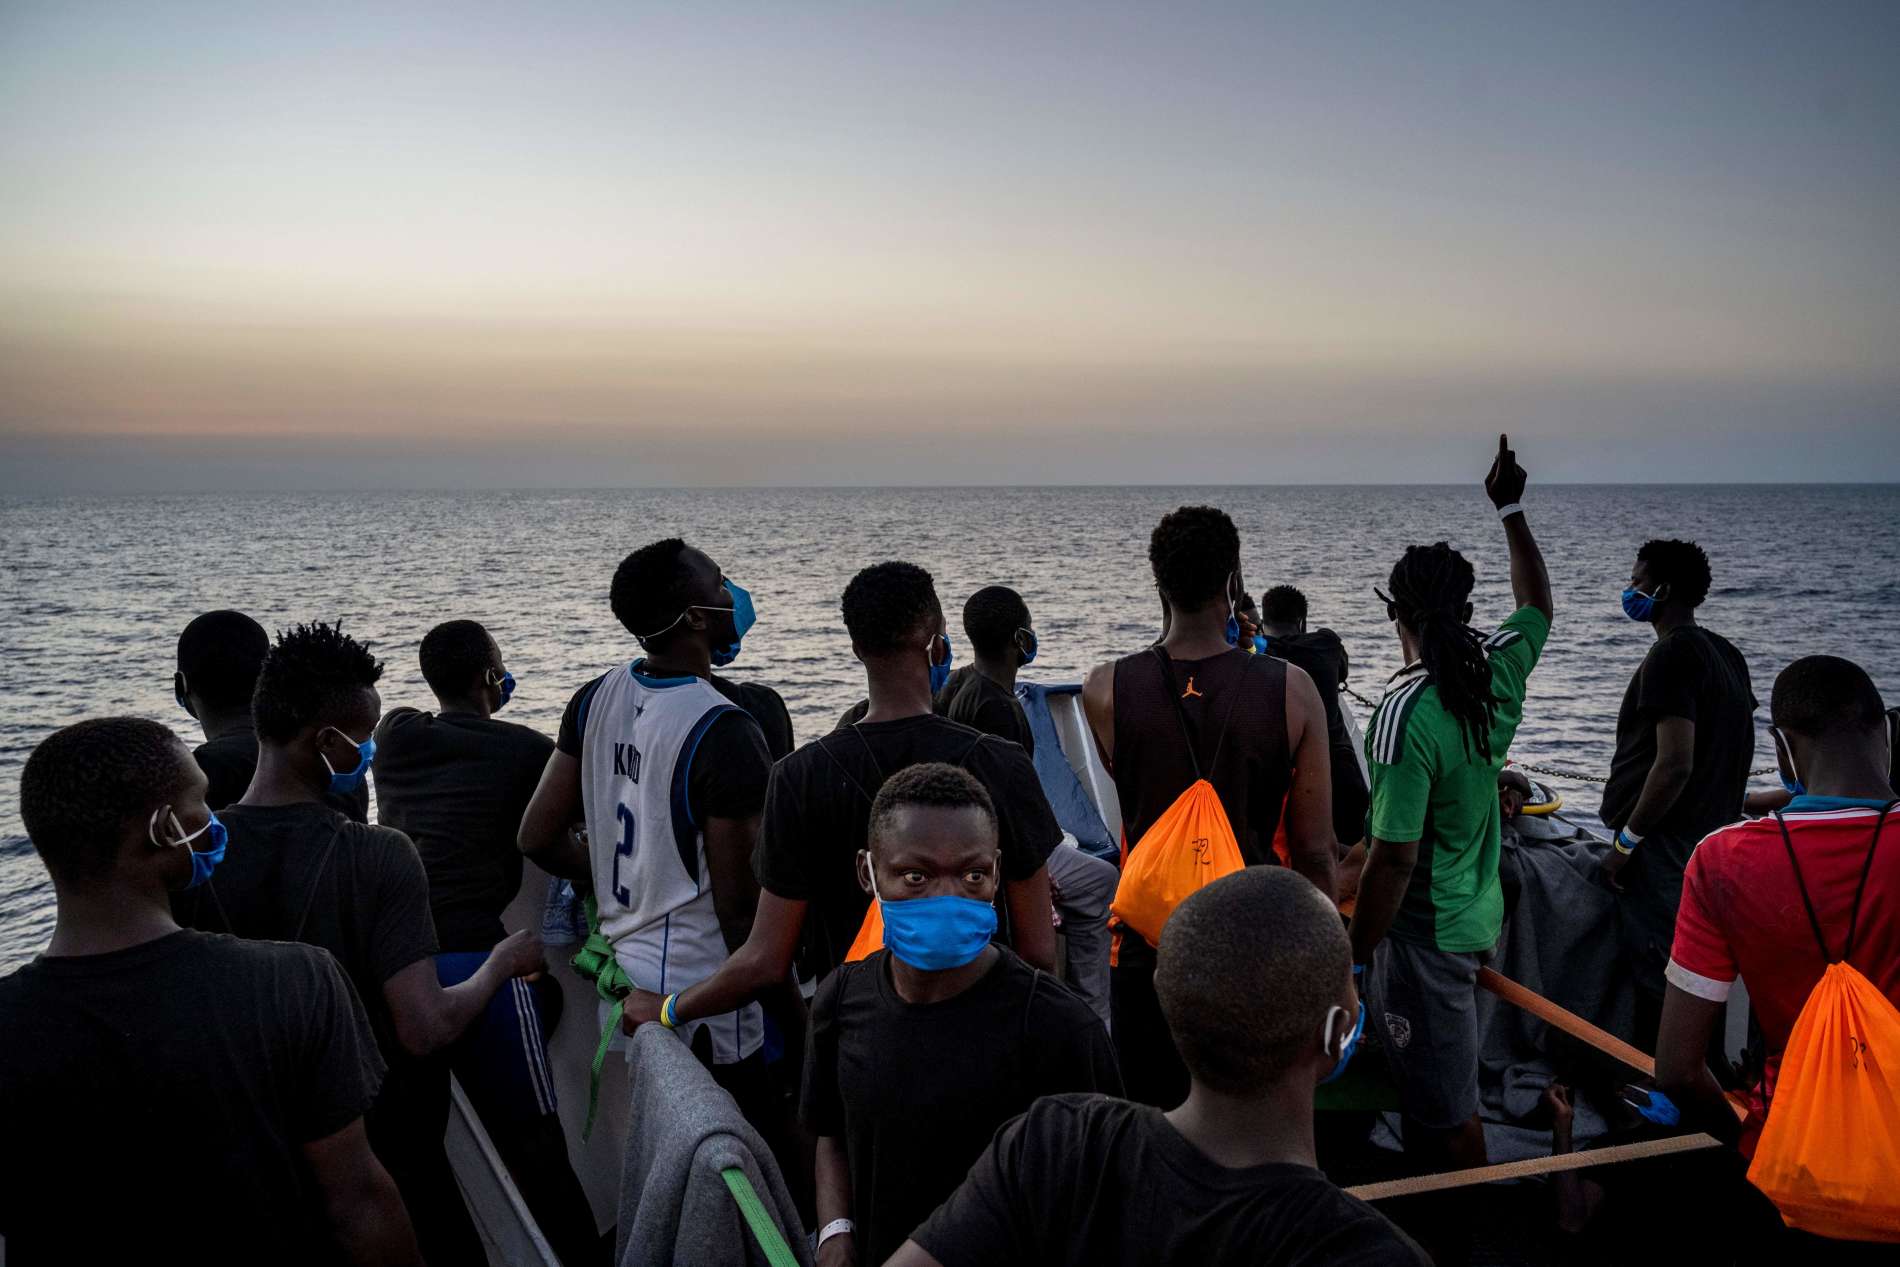 Immer wieder versuchen Flüchtlinge aus afrikanischen Ländern, auf dem Seeweg europäisches Territorium zu erreichen, Tendenz steigend.